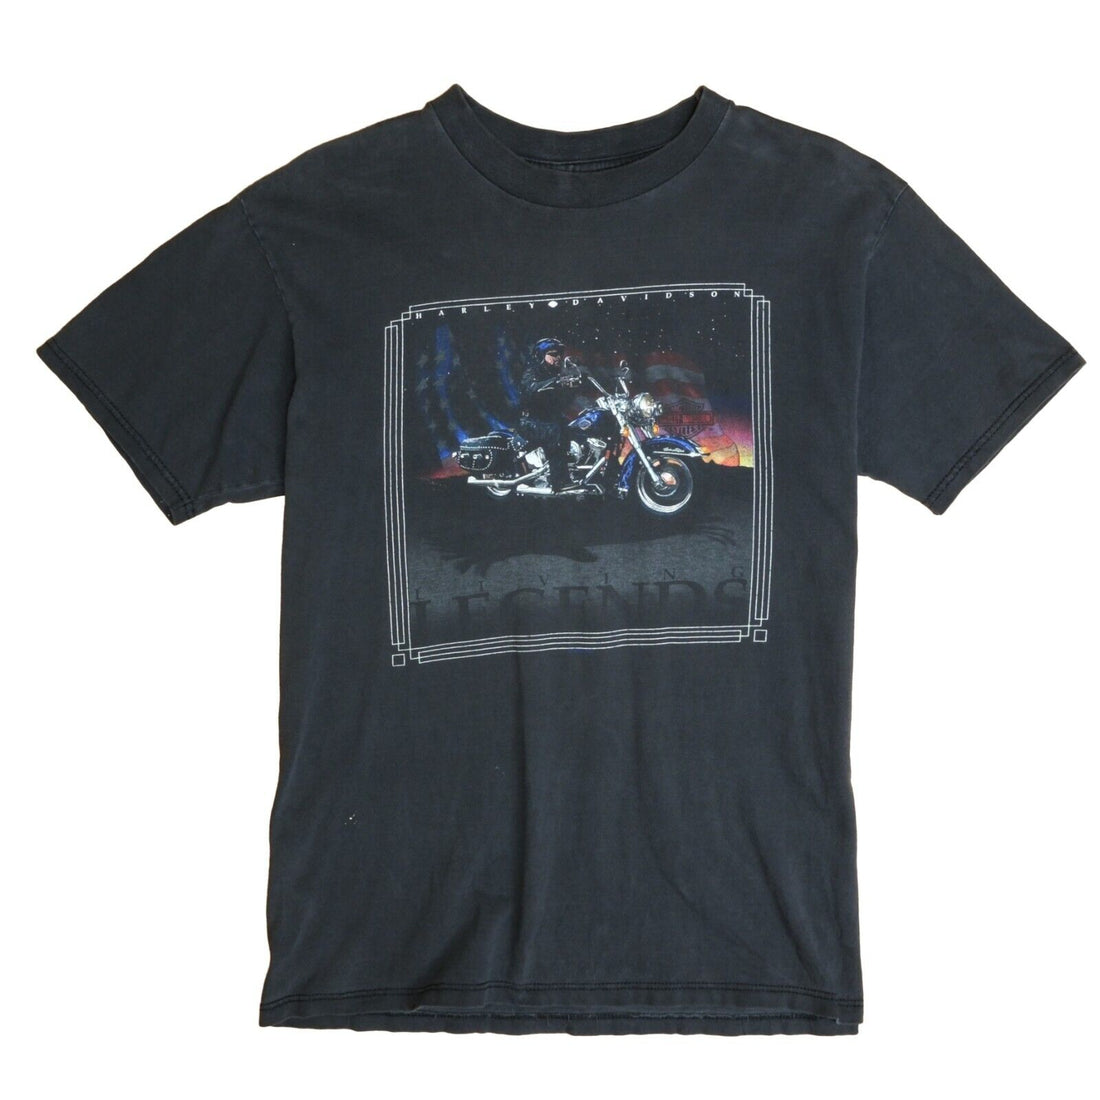 Vintage Harley Davidson Motorcycles Living Legends T-Shirt Size Large 1999 90s